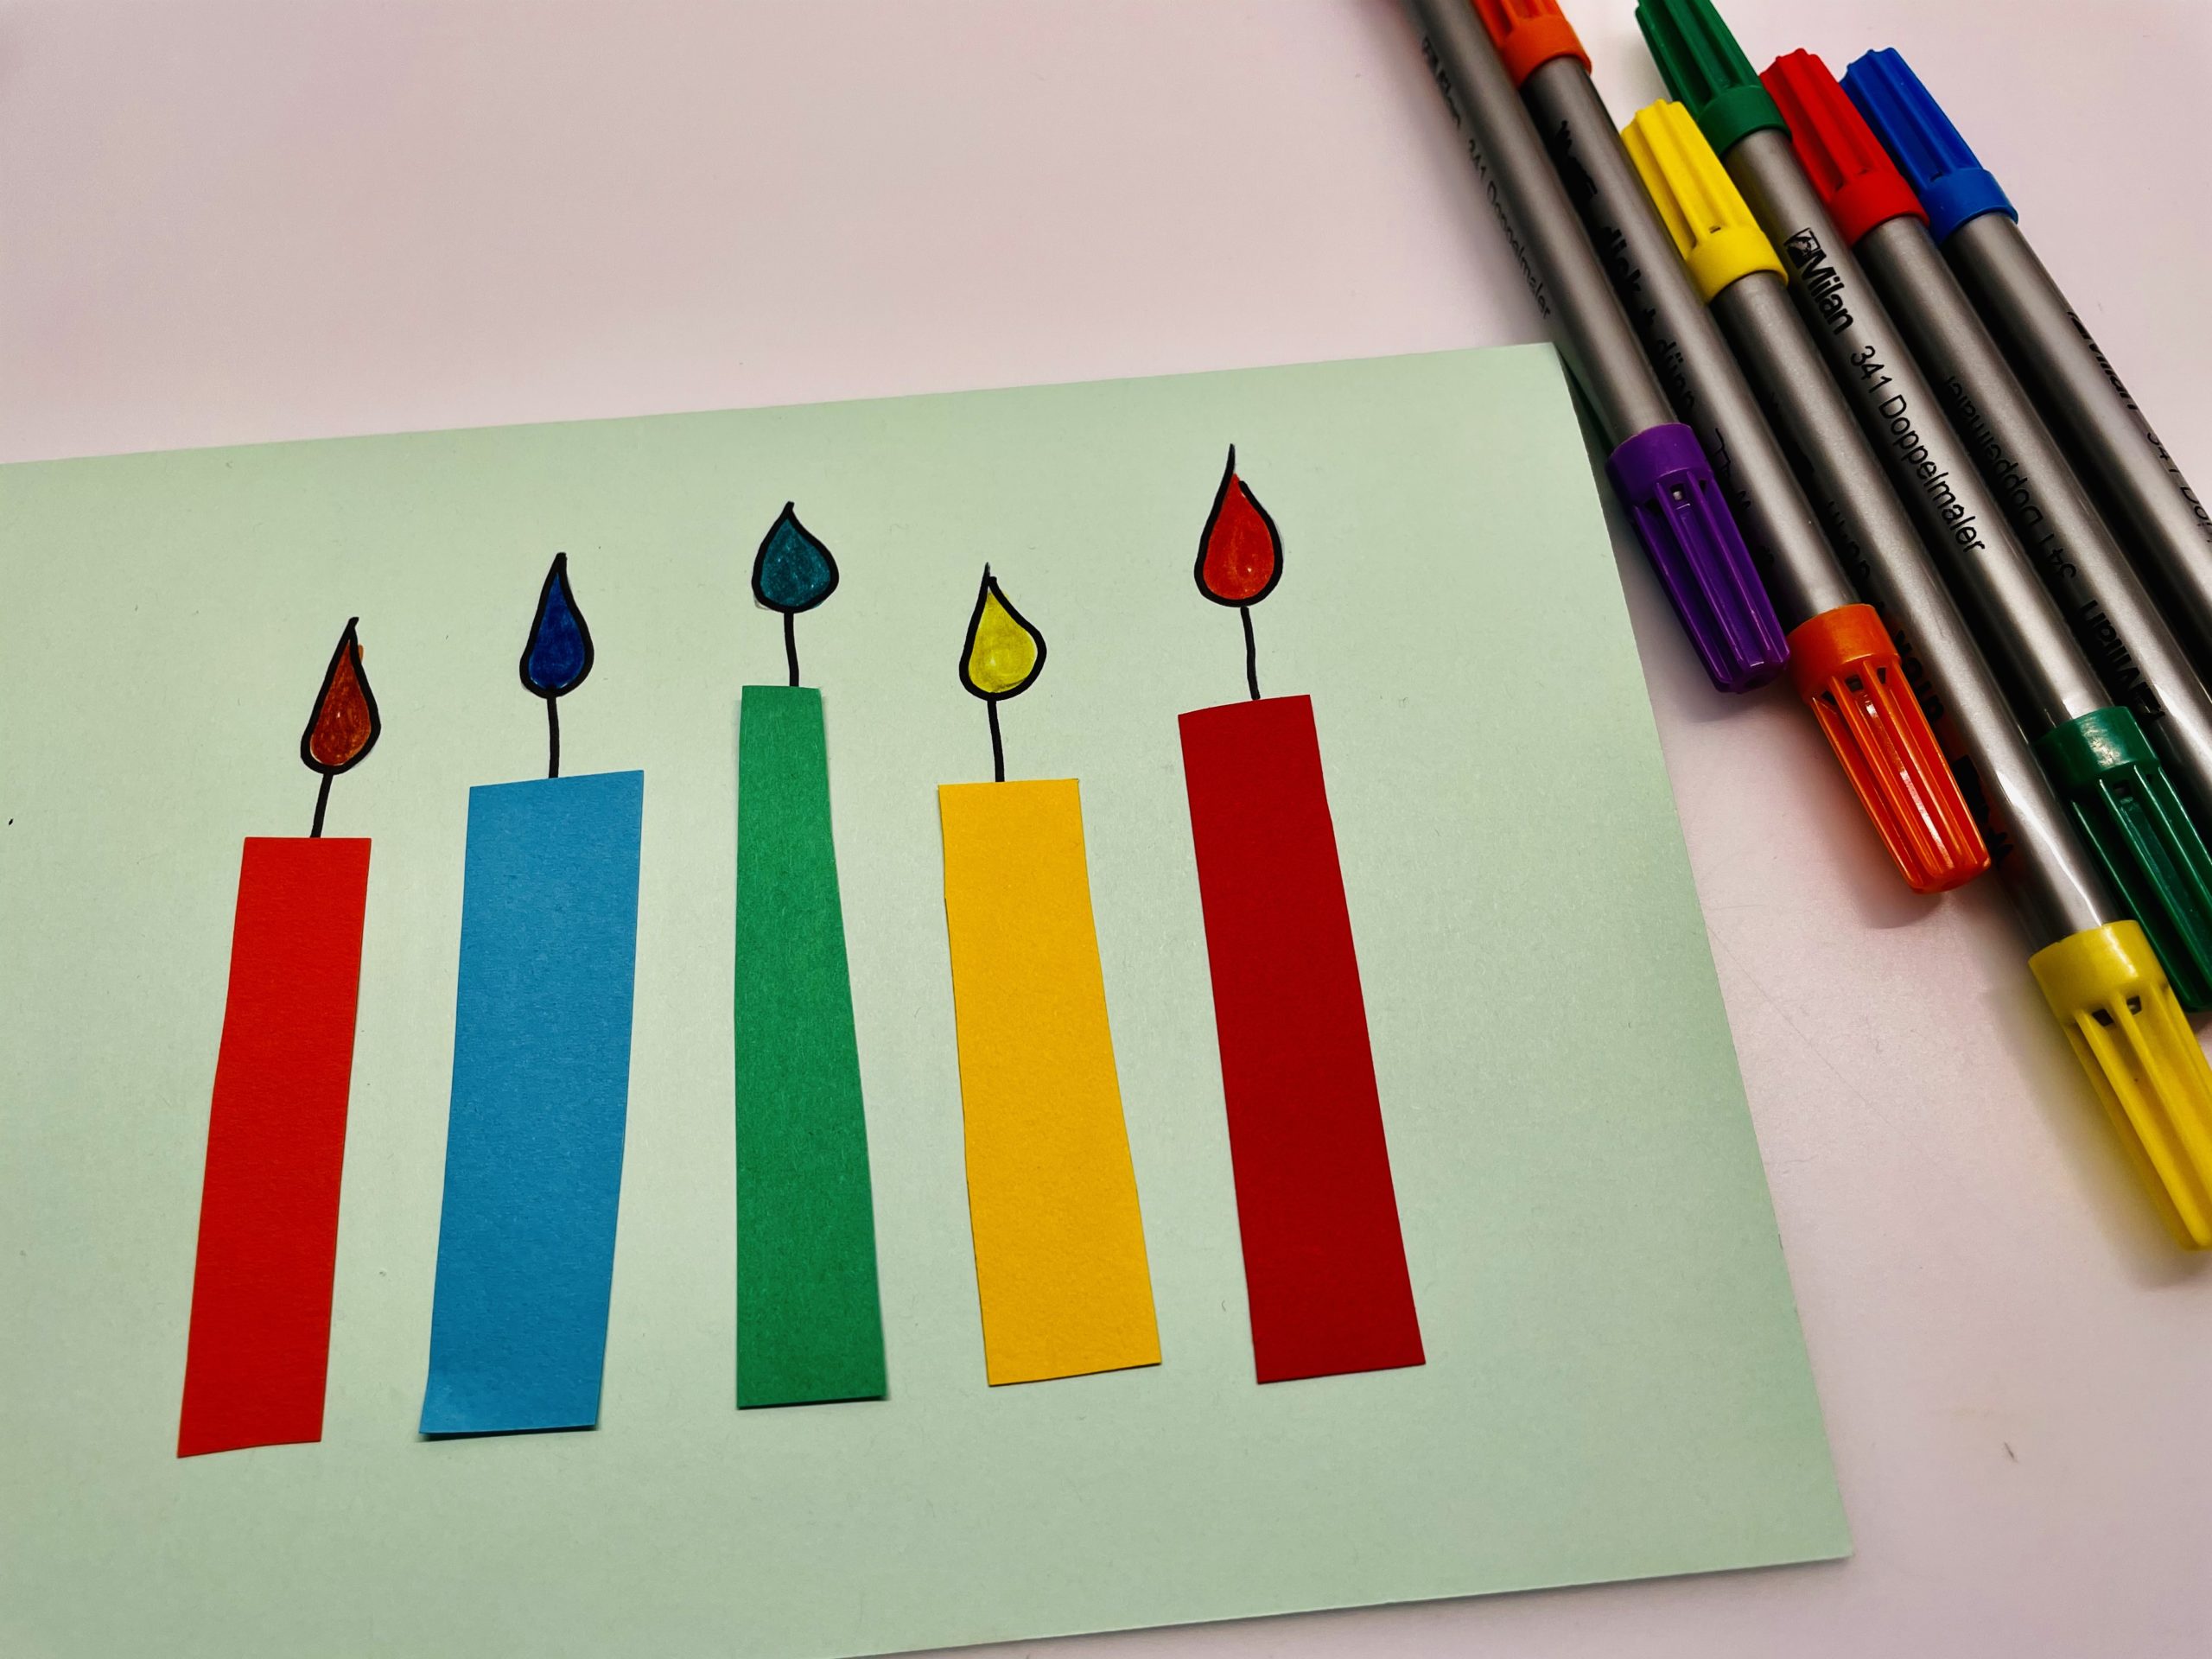 Bild zum Schritt 8 für das Bastel- und DIY-Abenteuer für Kinder: 'Jetzt malt die Flammen aus. Zum Beispiel in den Farben...'